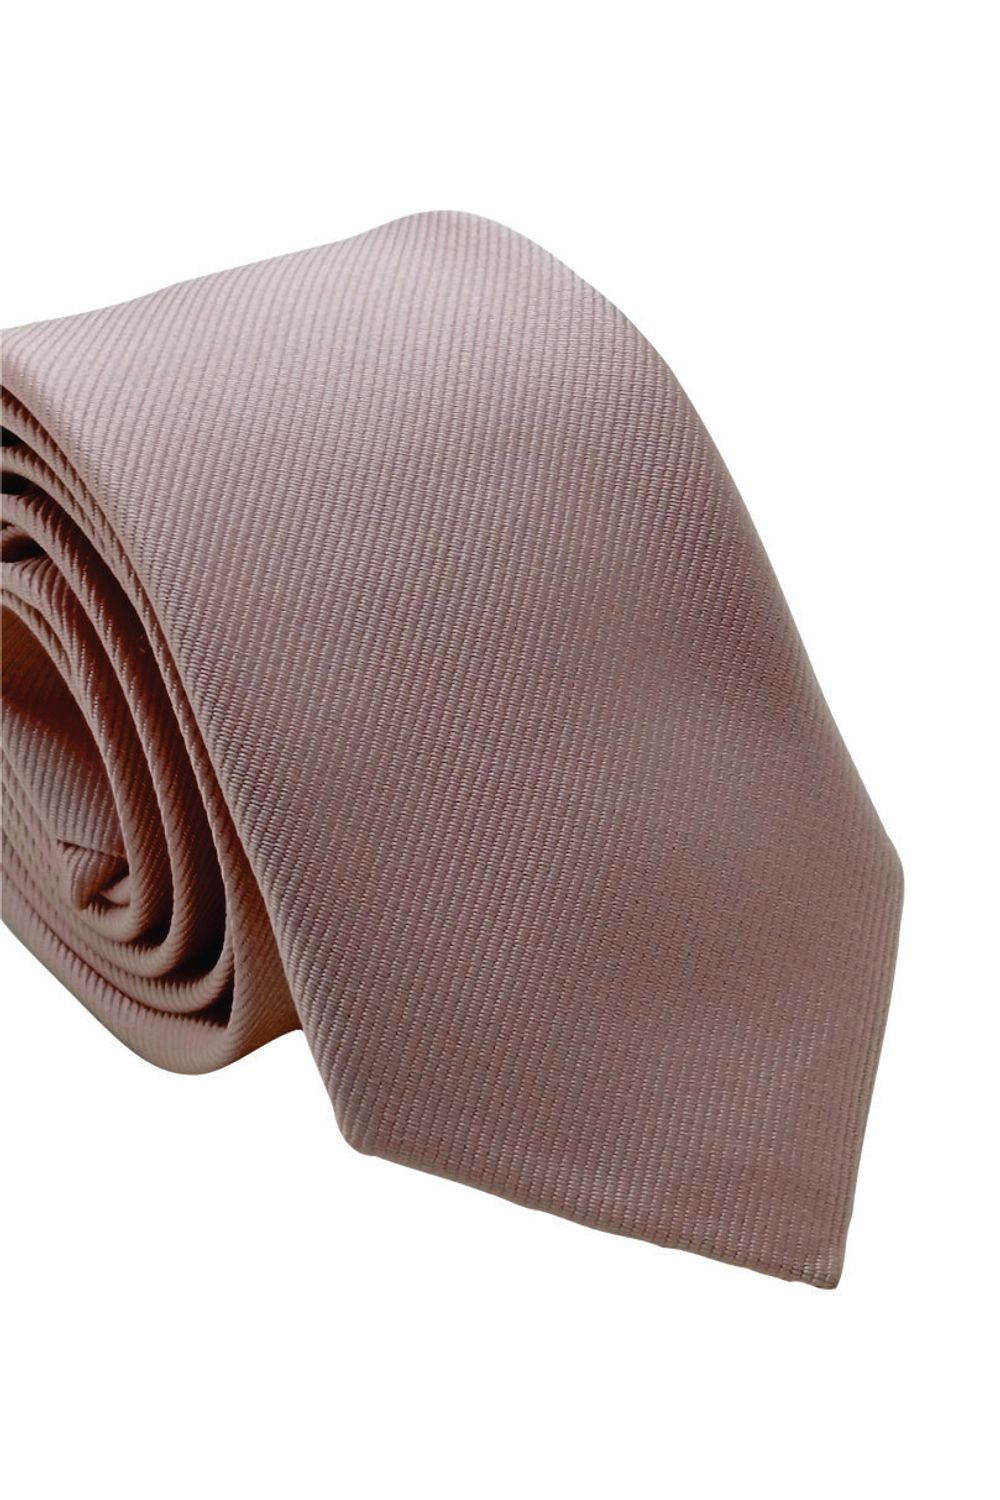 Gravata-poliester-slim-rosa---ideal-para-casamento-dia-a-dia-e-eventos.